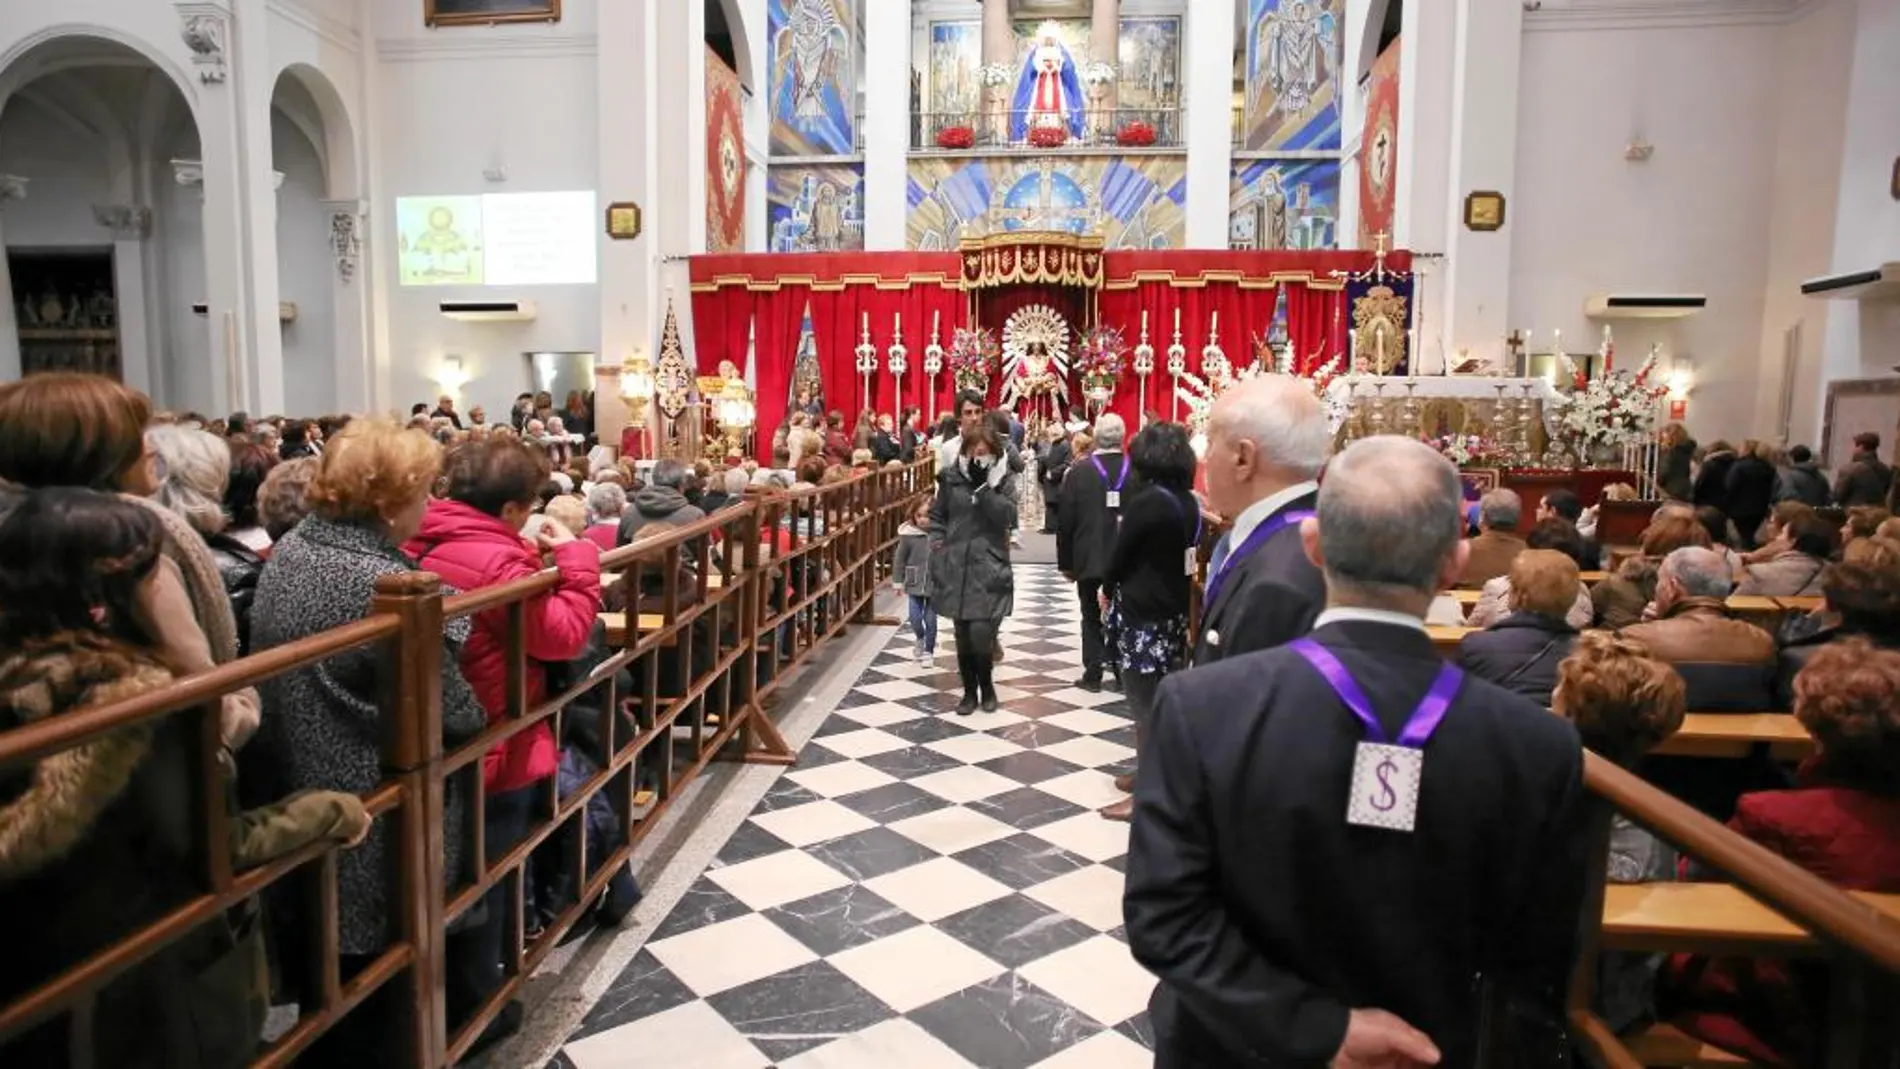 Durante todo el dían las puertas de la basílica estuvieron abiertas para recibir a miles de fieles